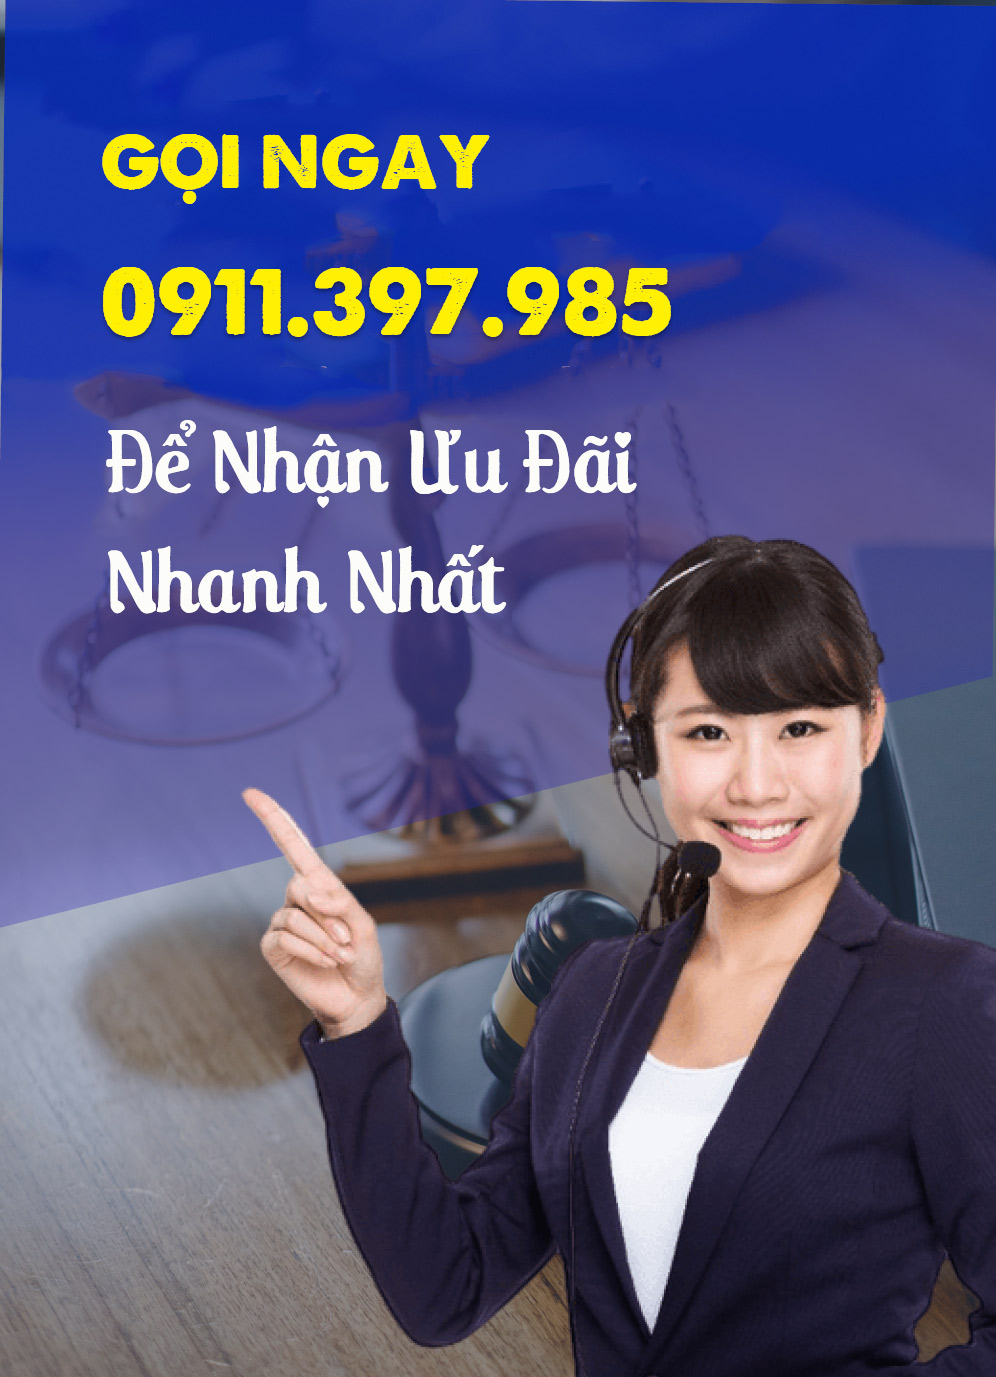 hotline tư vấn pháp luật doanh nghiệp